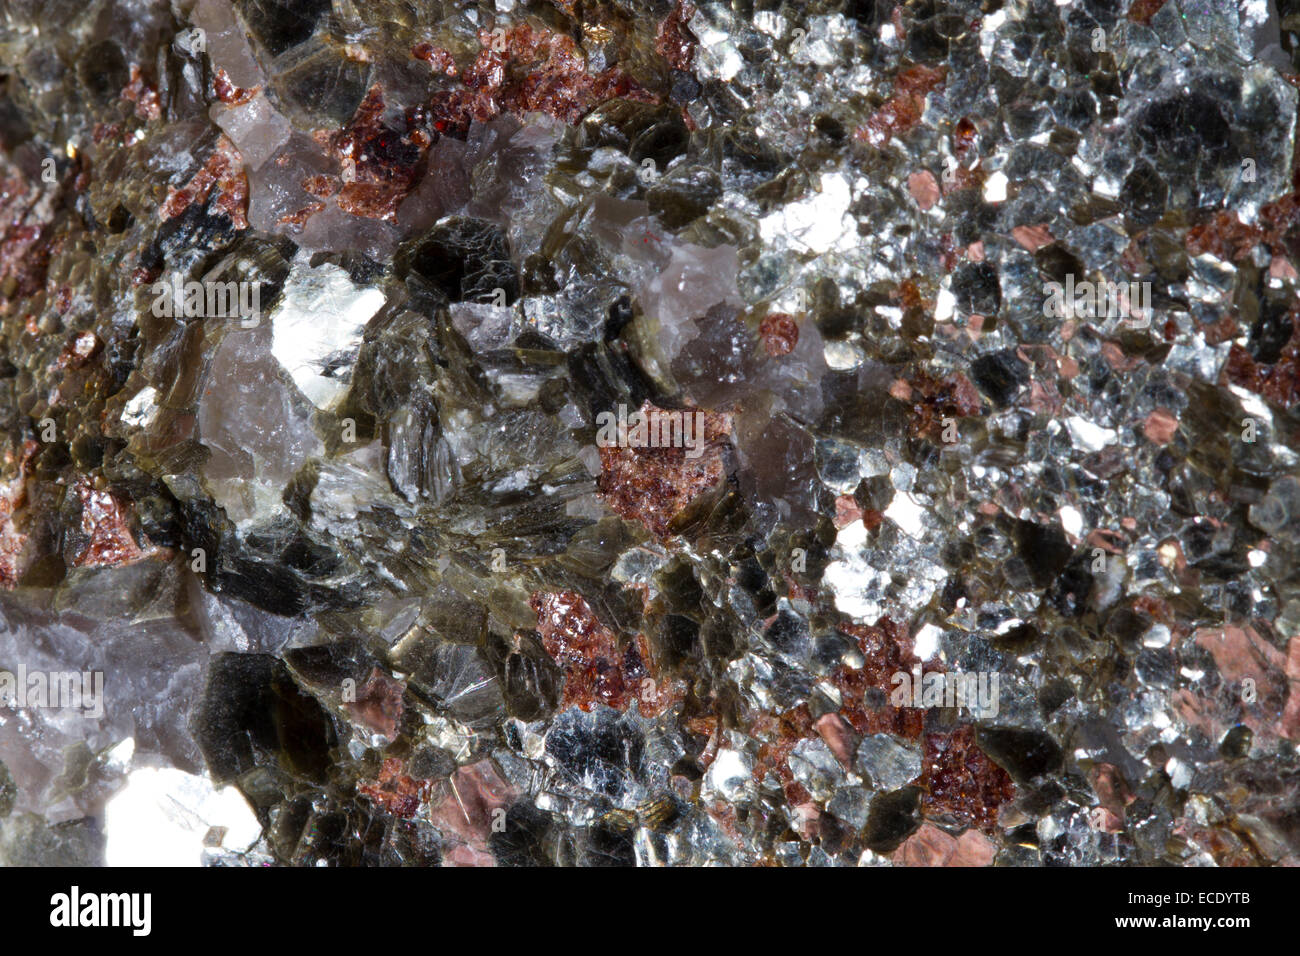 Minerals. Muscovite mica flakes, garnets, and quartz. Origin Norway. Stock Photo